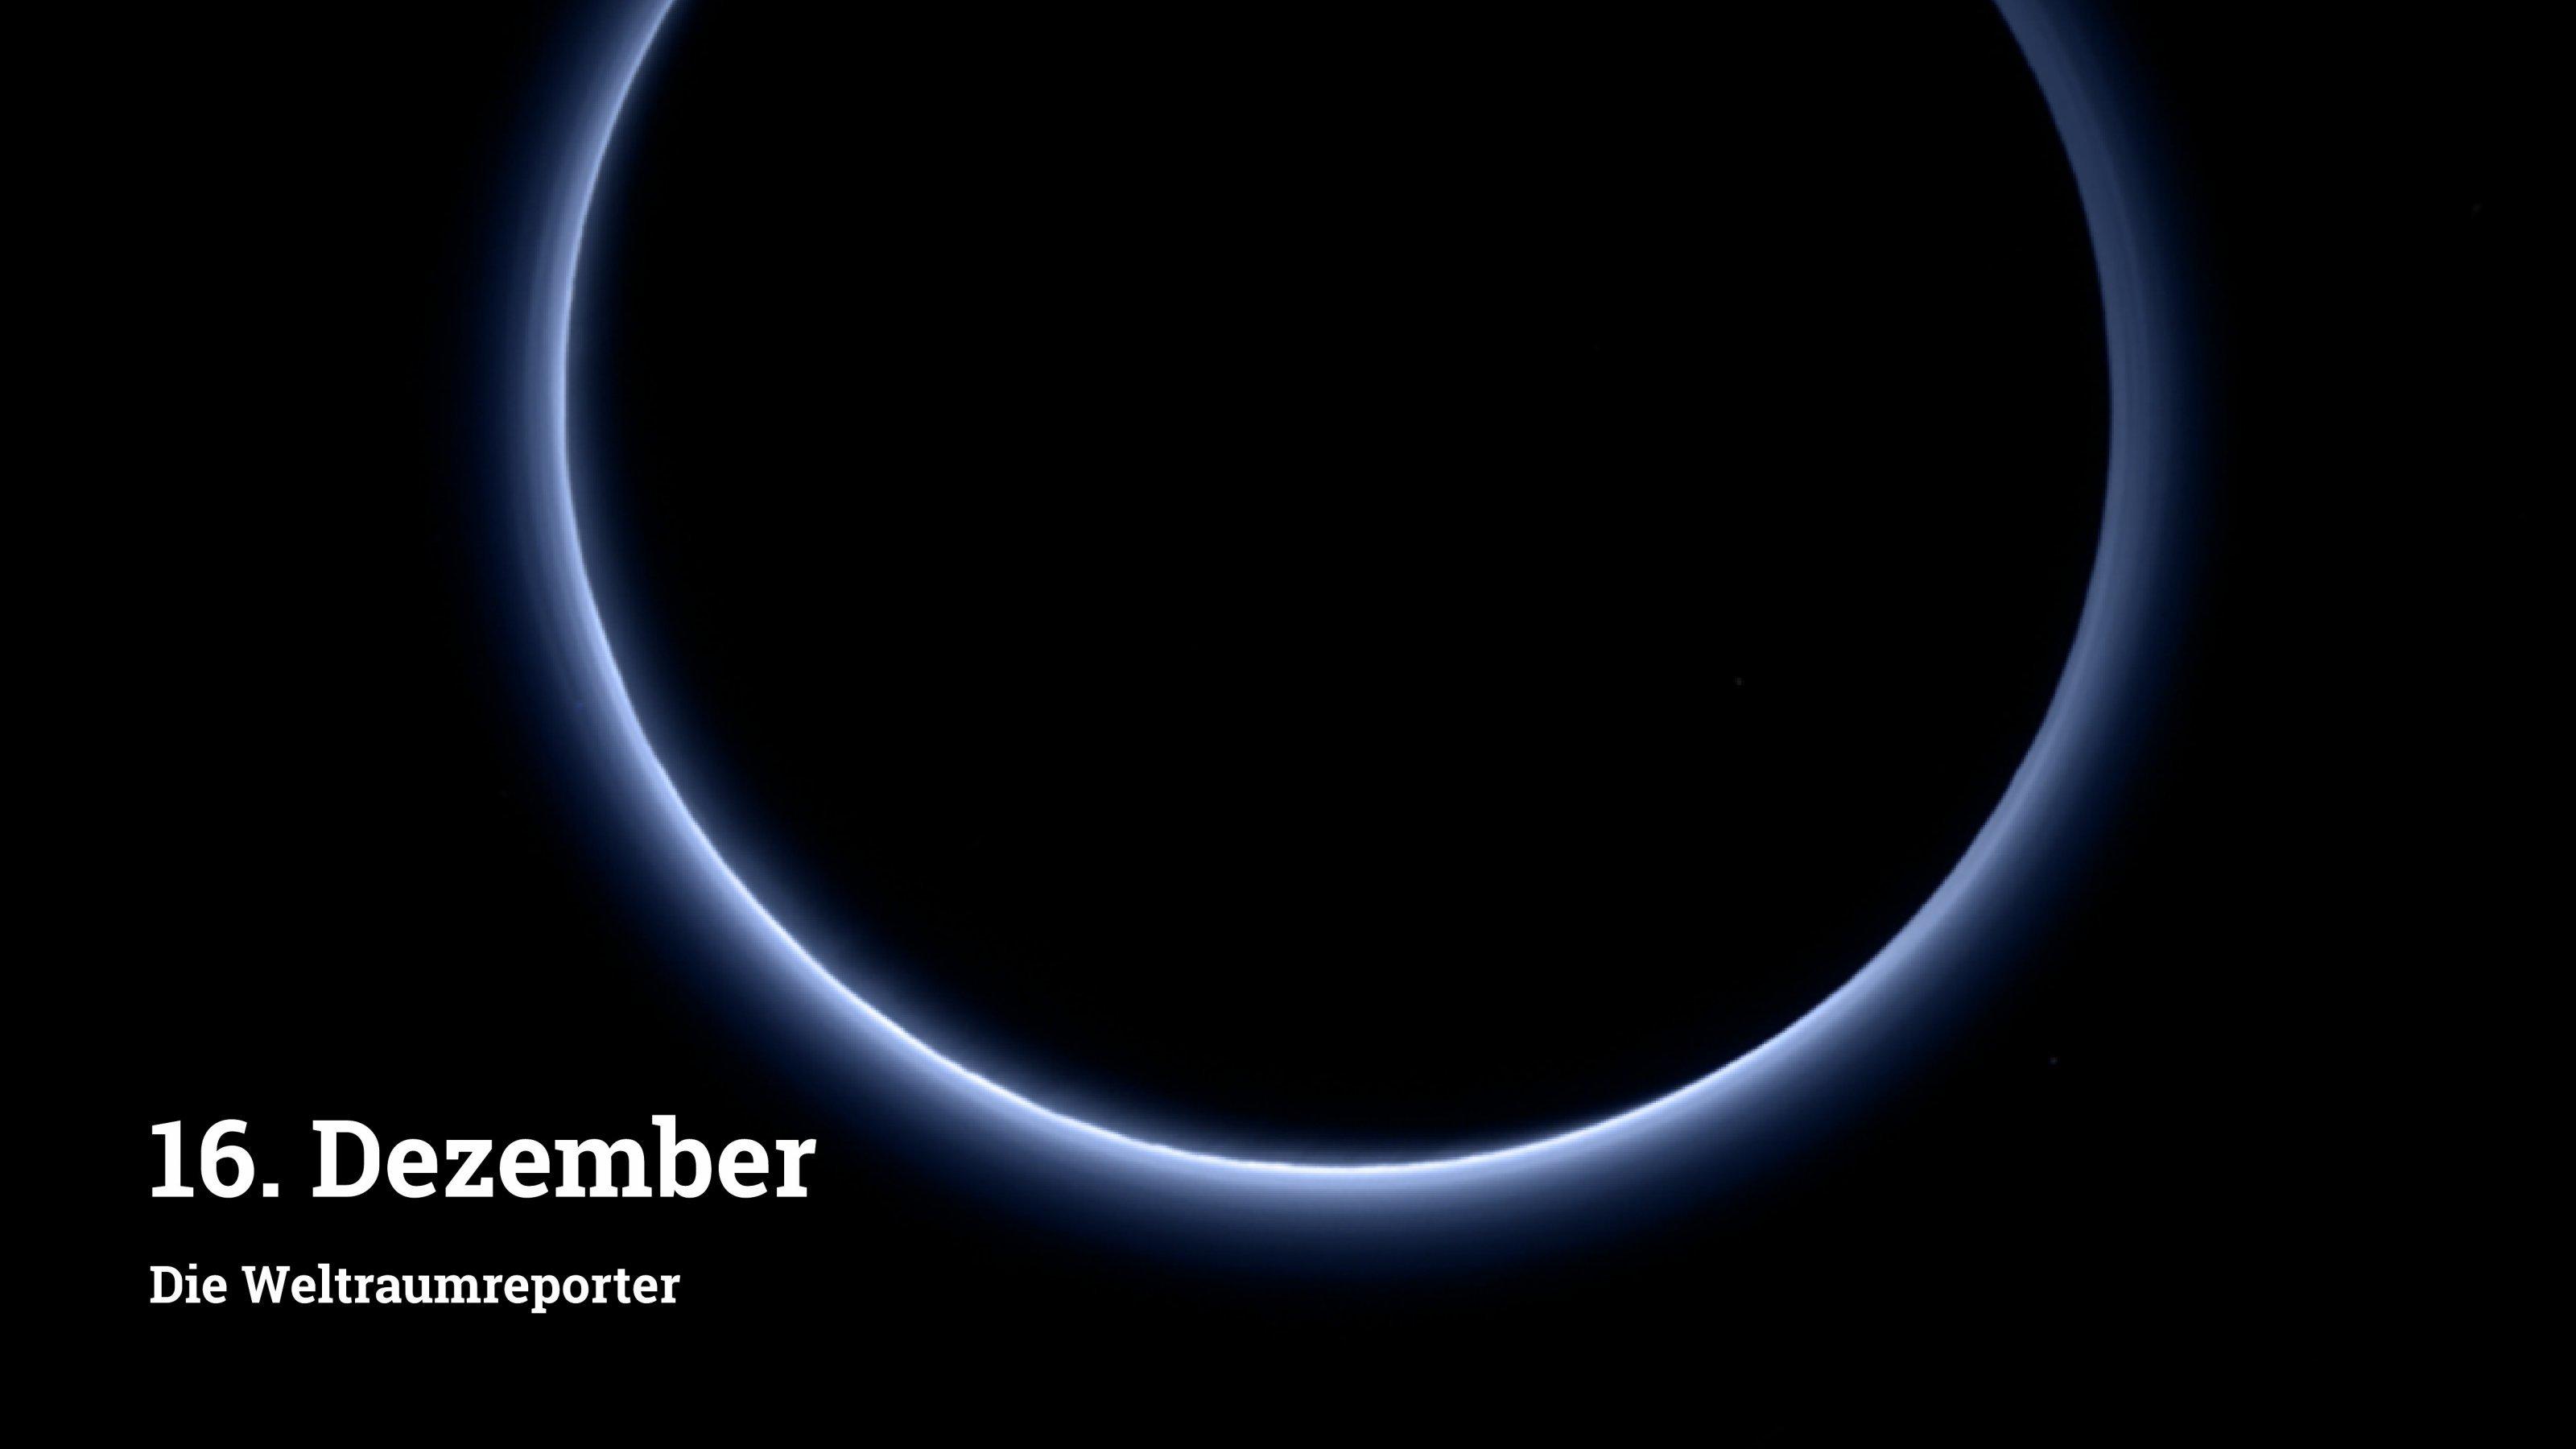 Pluto ist komplett schwarz, aber die (nicht sichtbare) Sonne dahinter beleuchtet in einem Kranz die Atmosphäre, die magisch bläulich leuchtet.